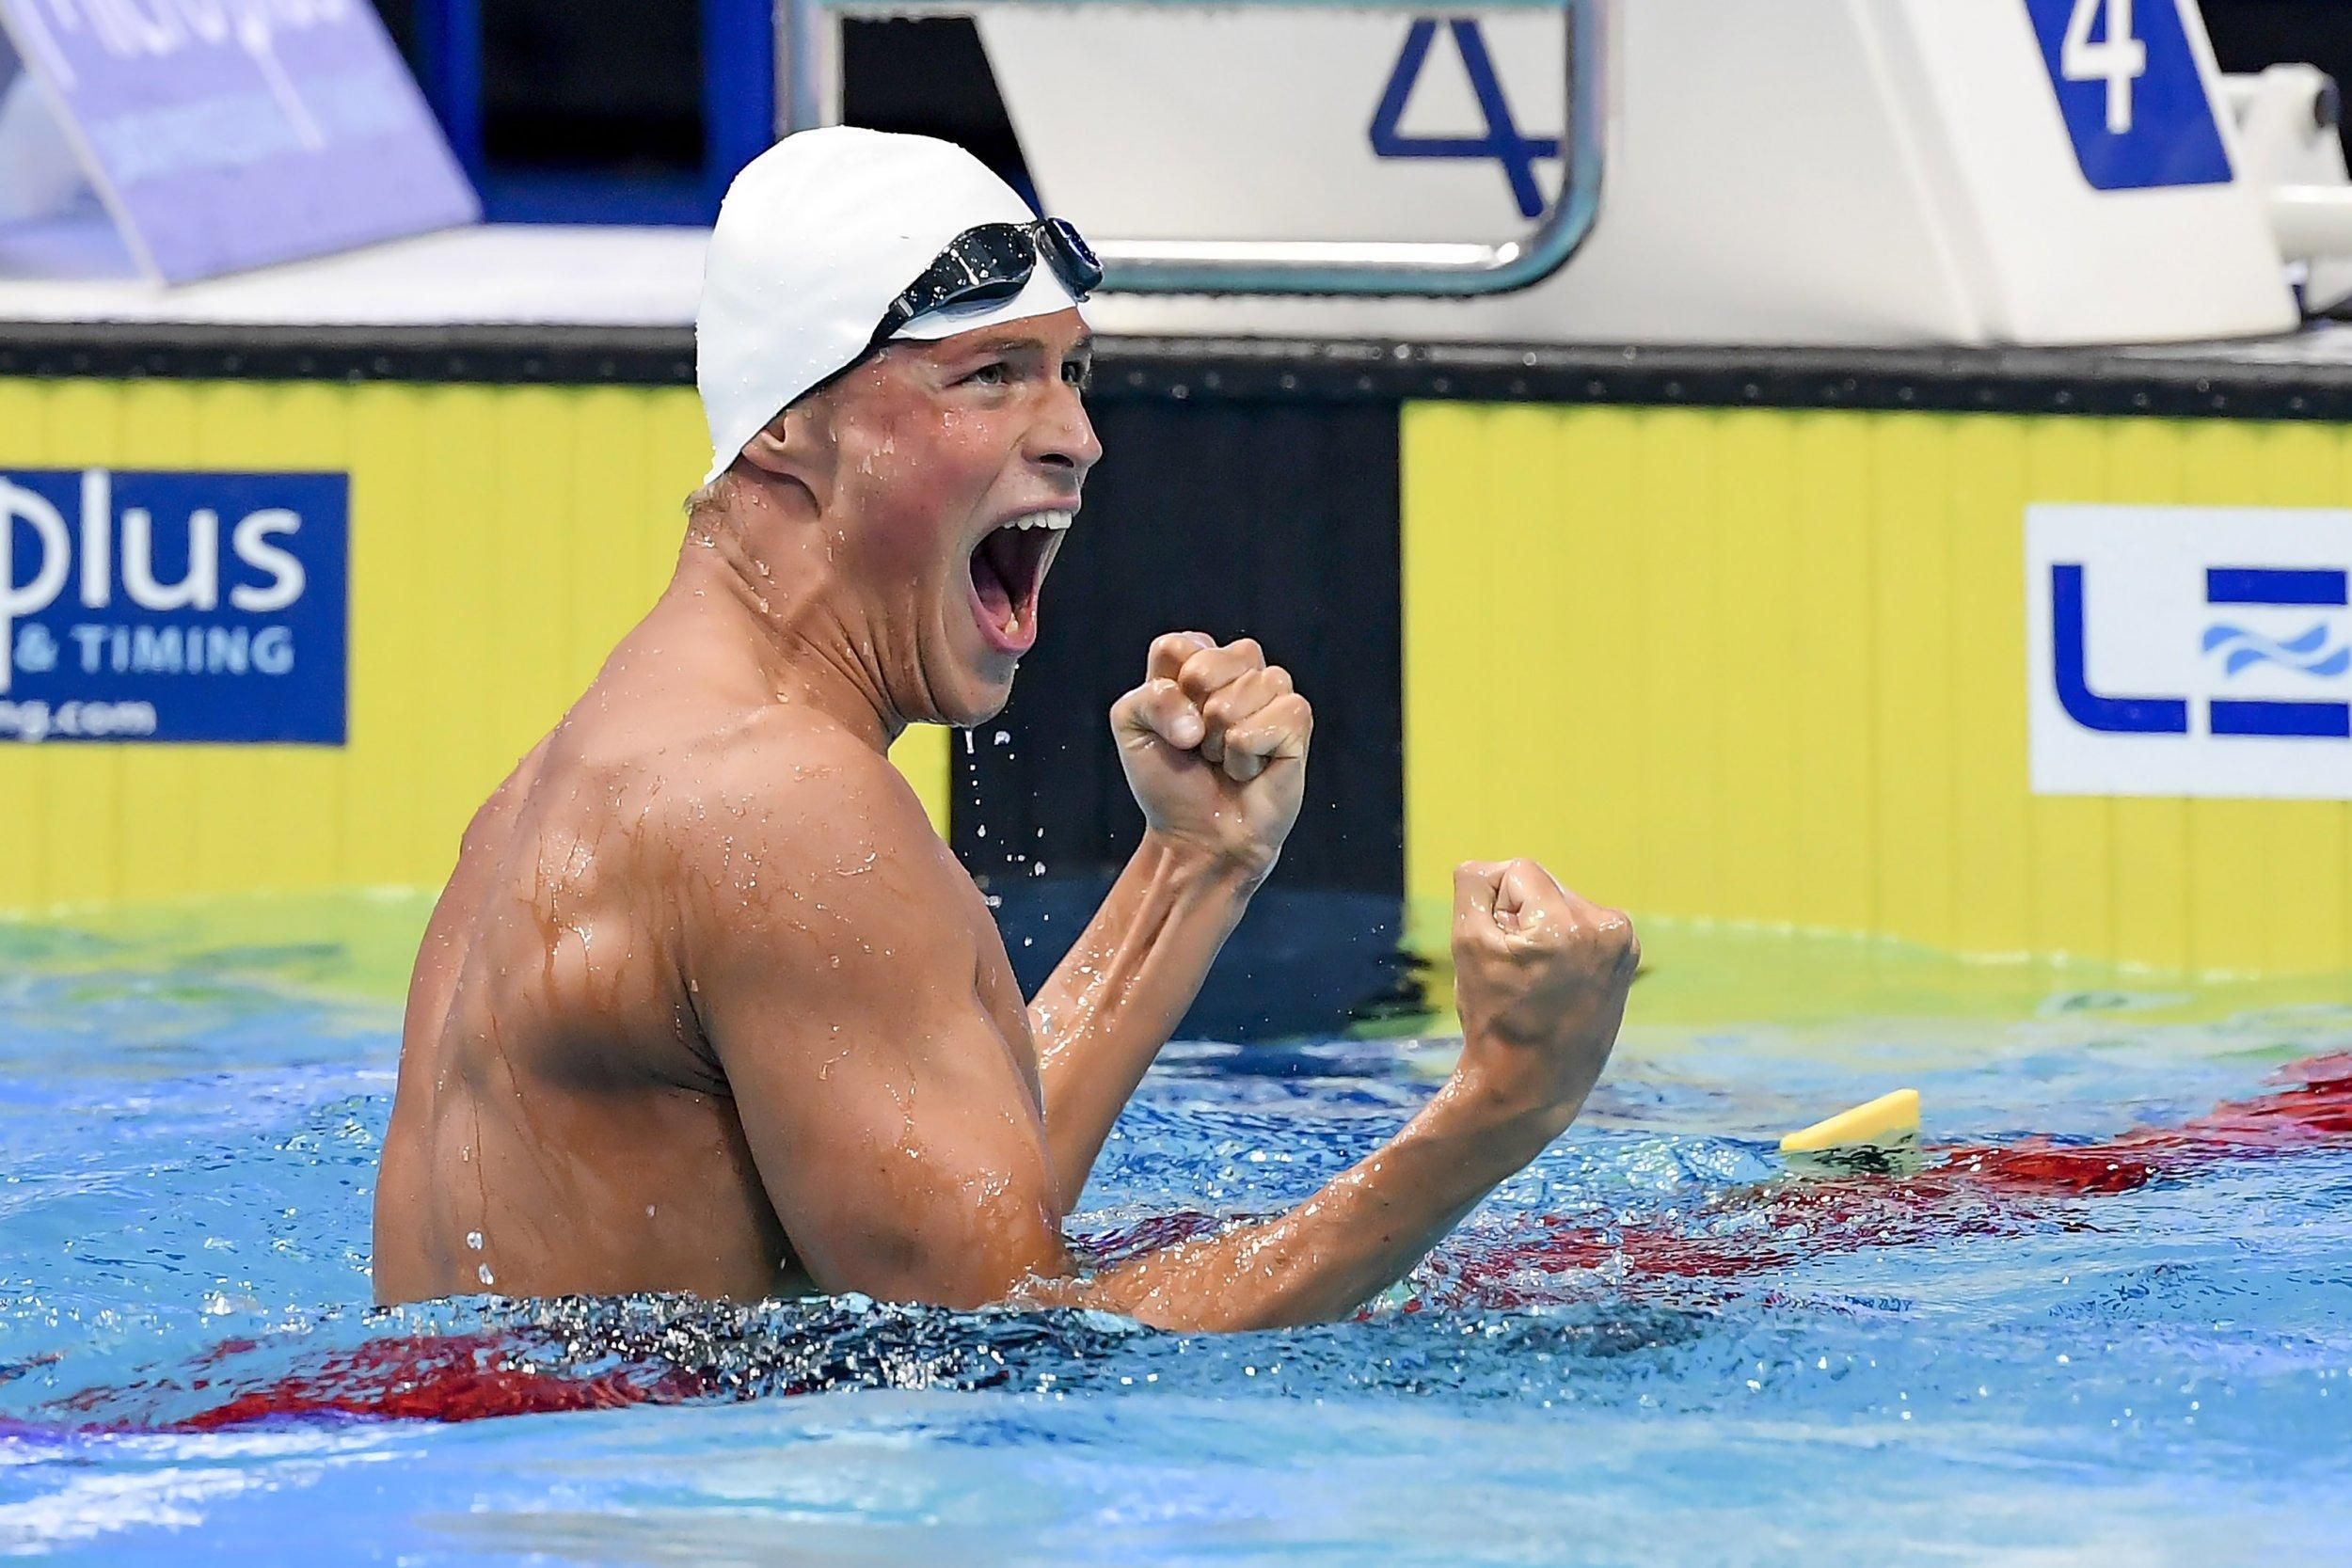 Українець Романчук виграв медаль чемпіону світу з плавання на короткій воді - Спорт 24